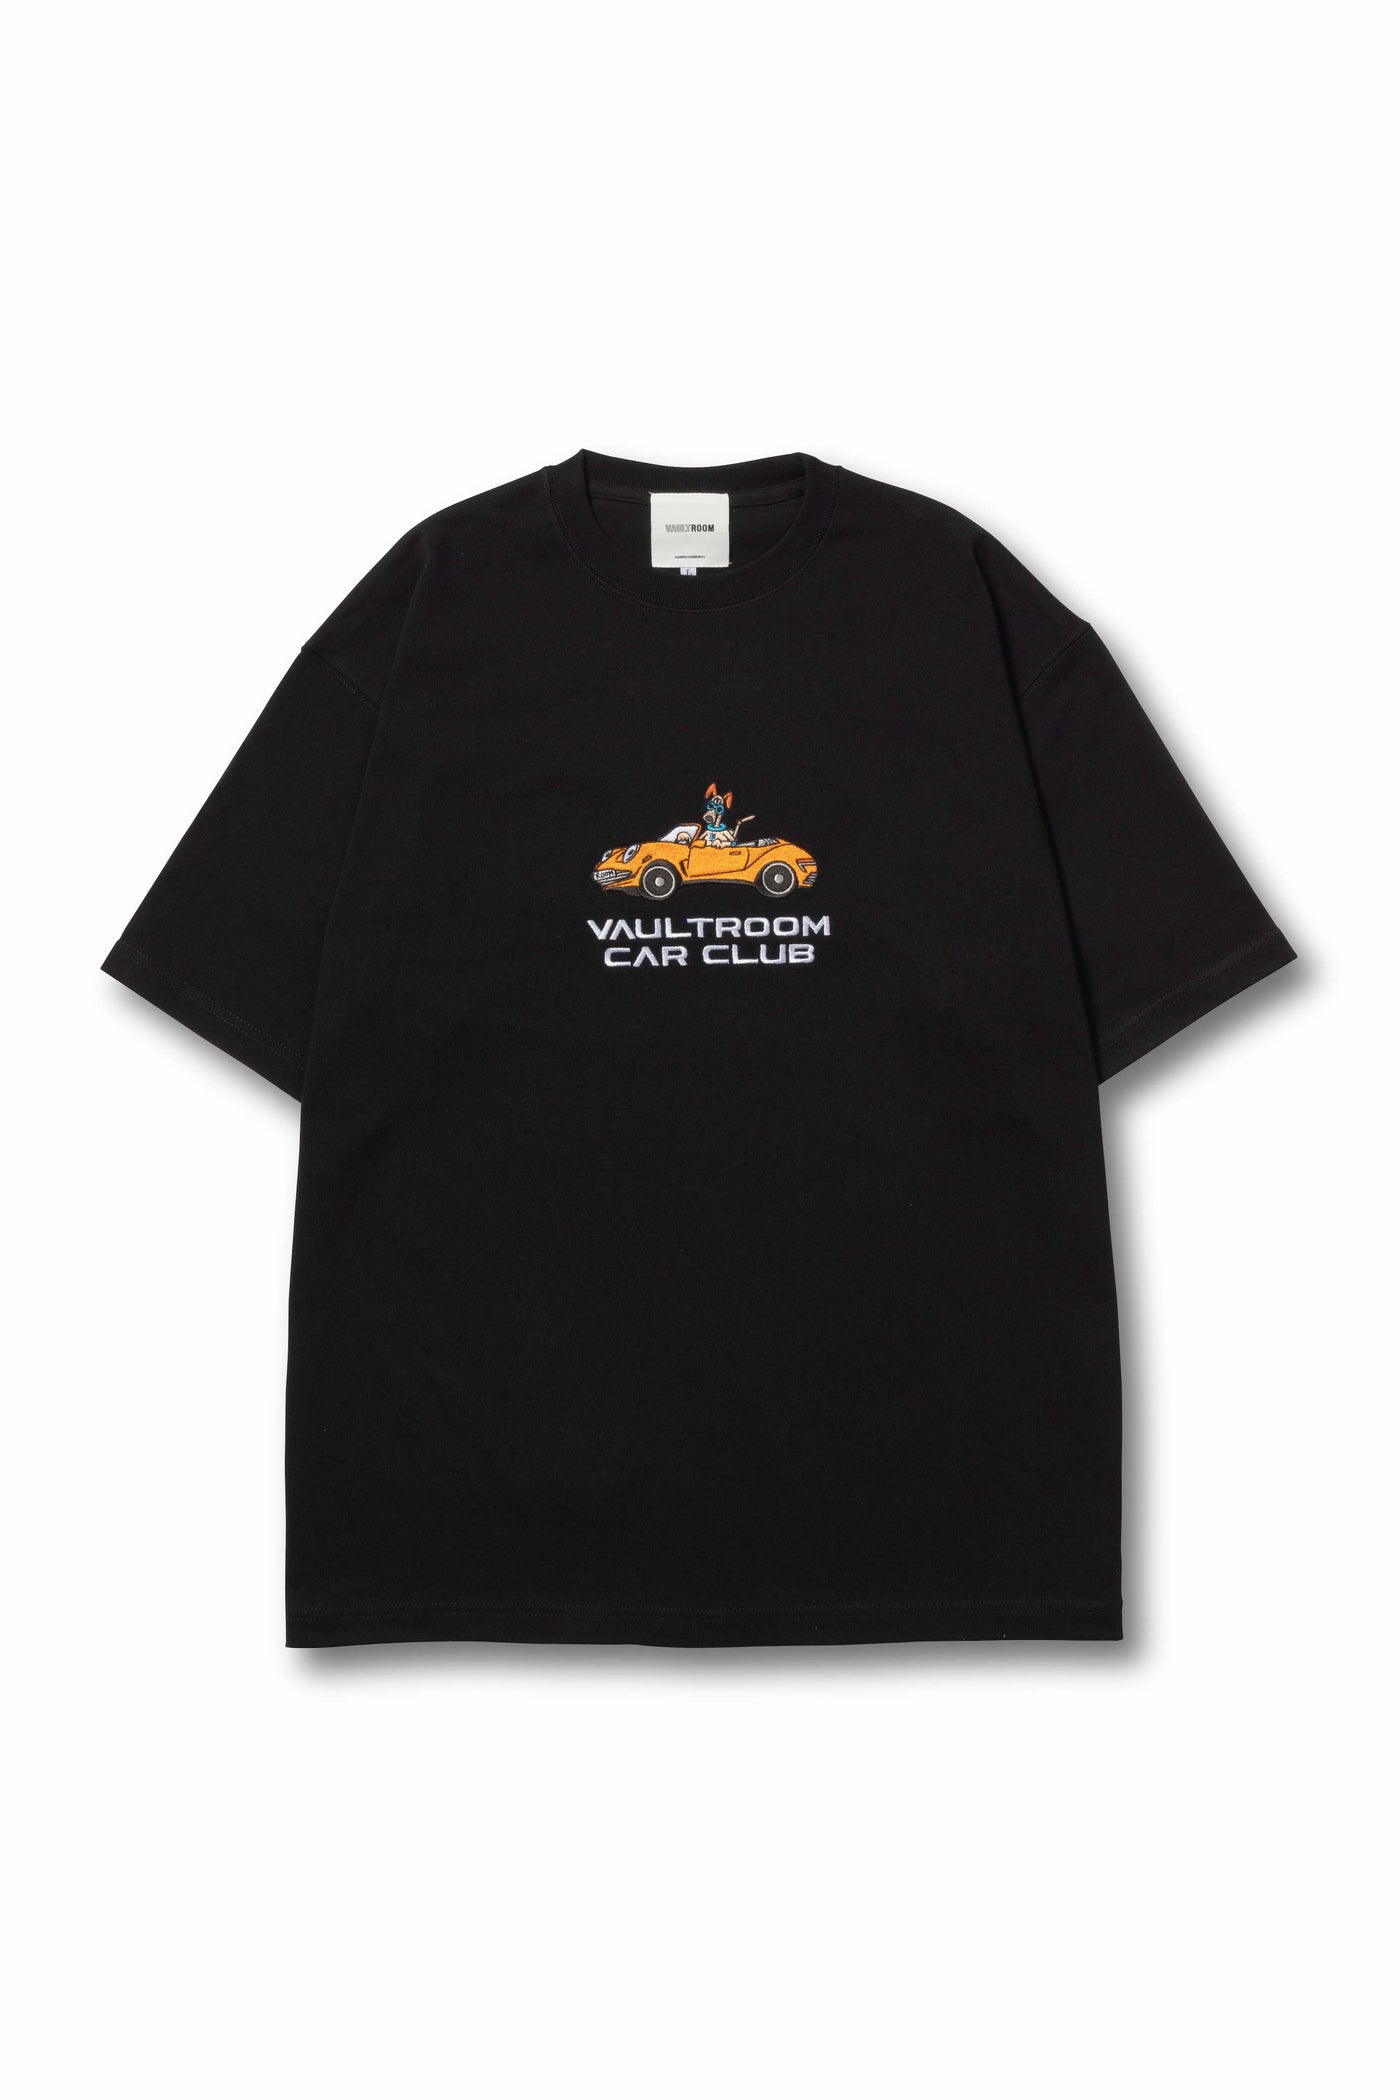 9,800円新品 FTP COP CAR TEE T-shirts XL Tシャツ